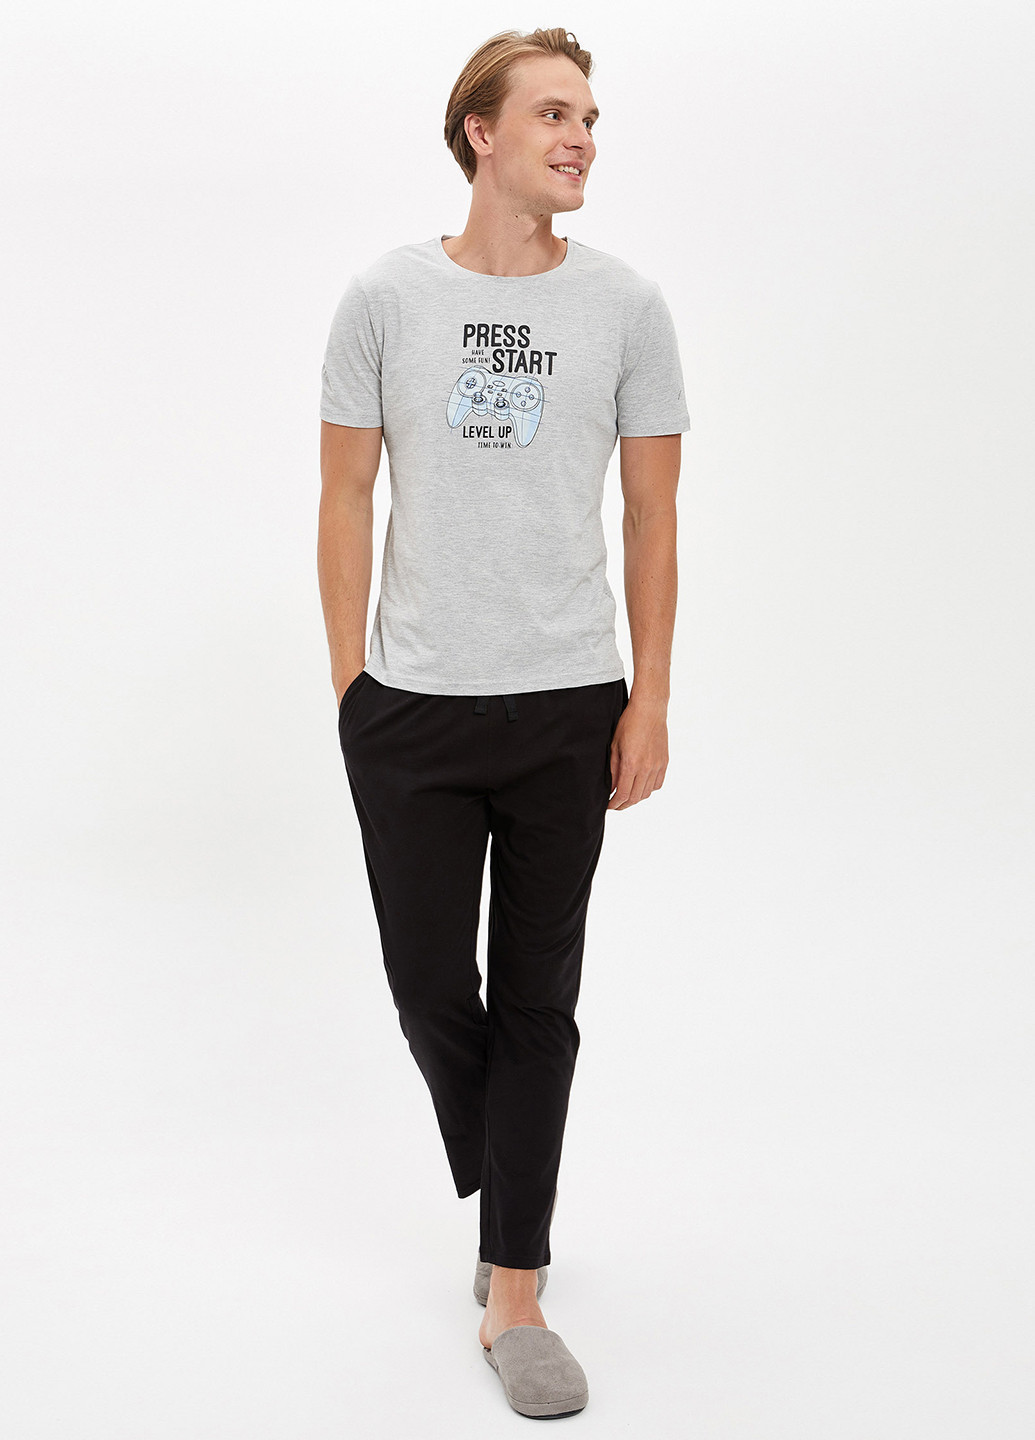 Серый демисезонный комплект(футболка, брюки) DeFacto